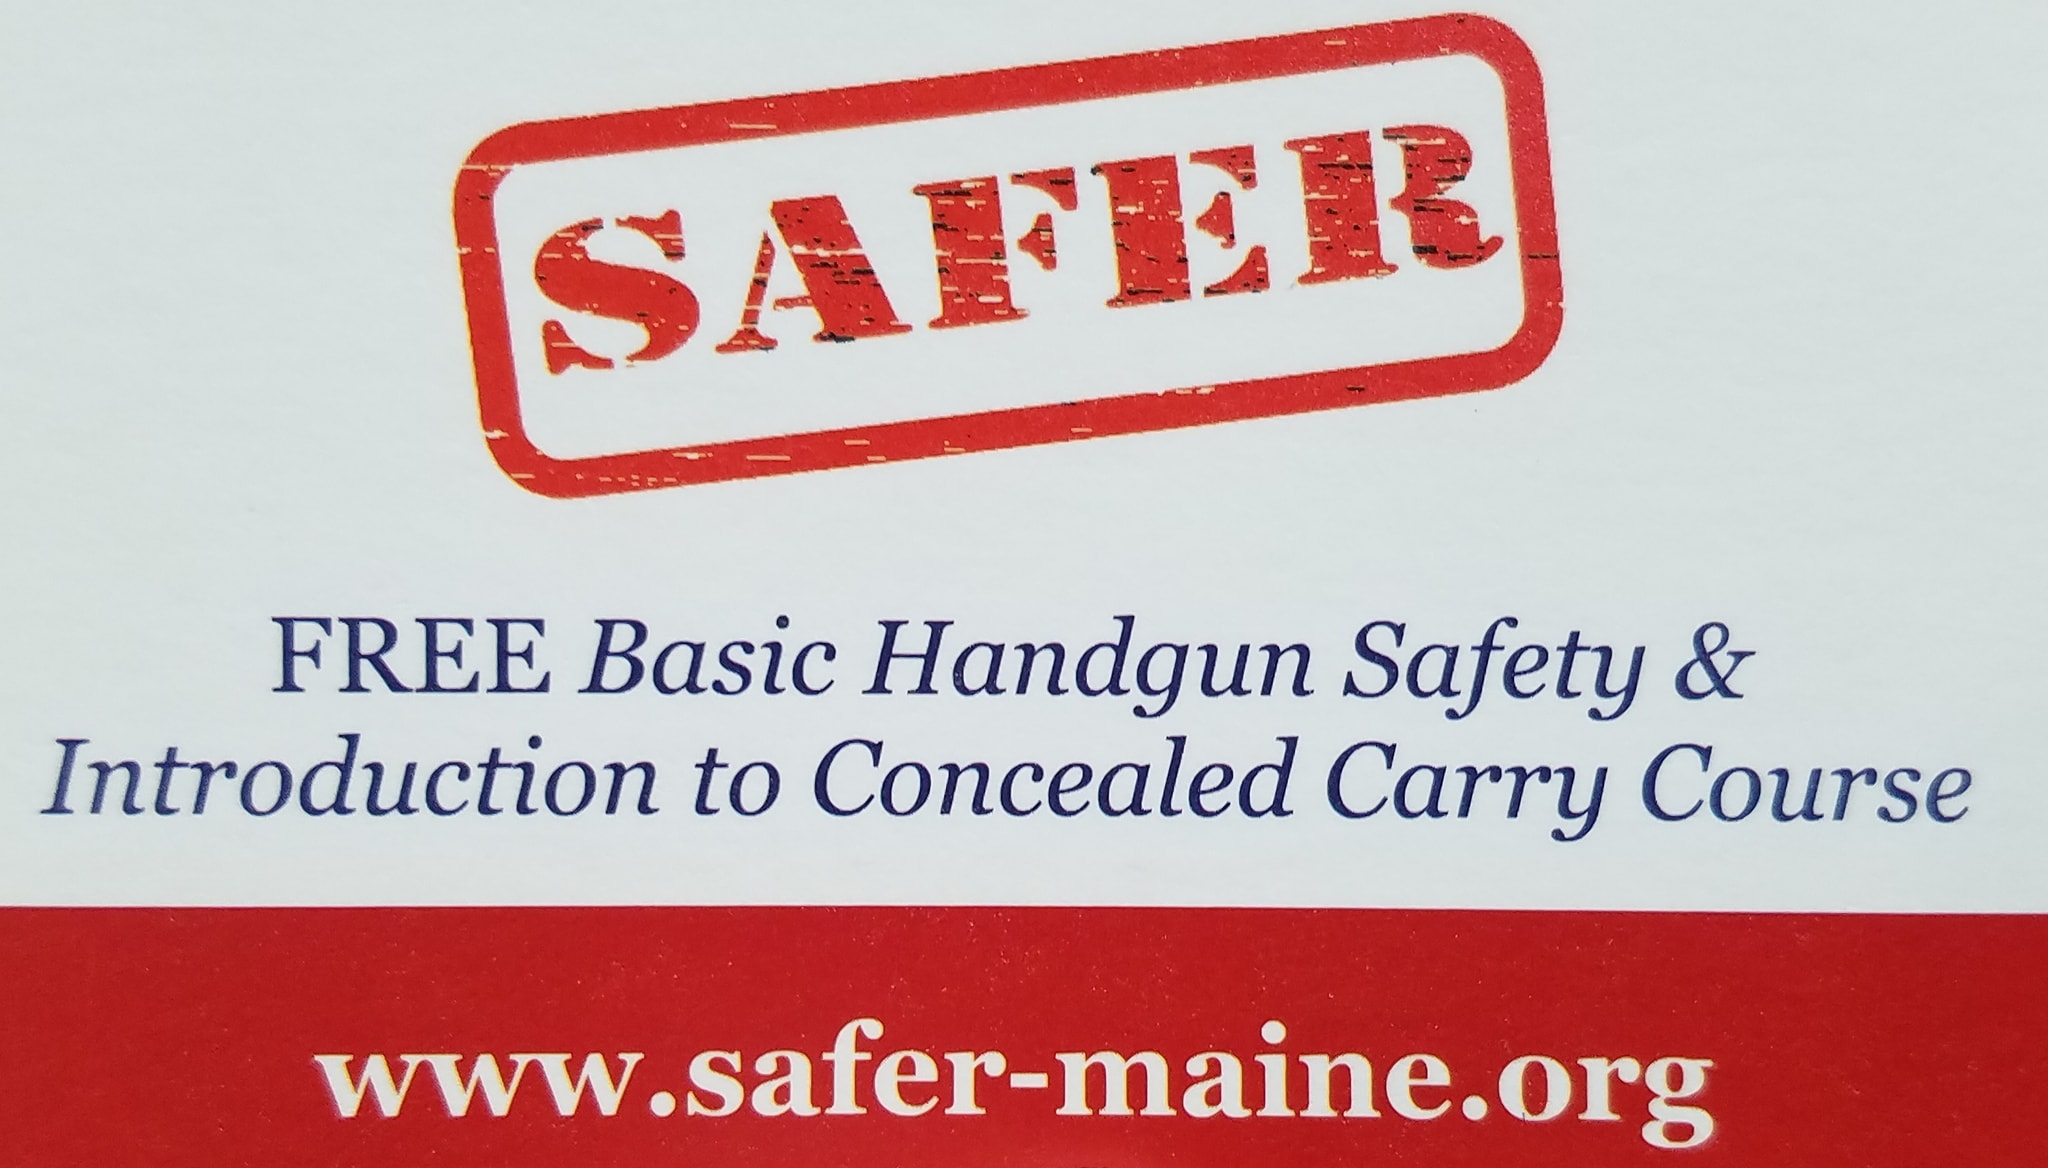 Safer Maine Org Free Basic Handgun Safety Course